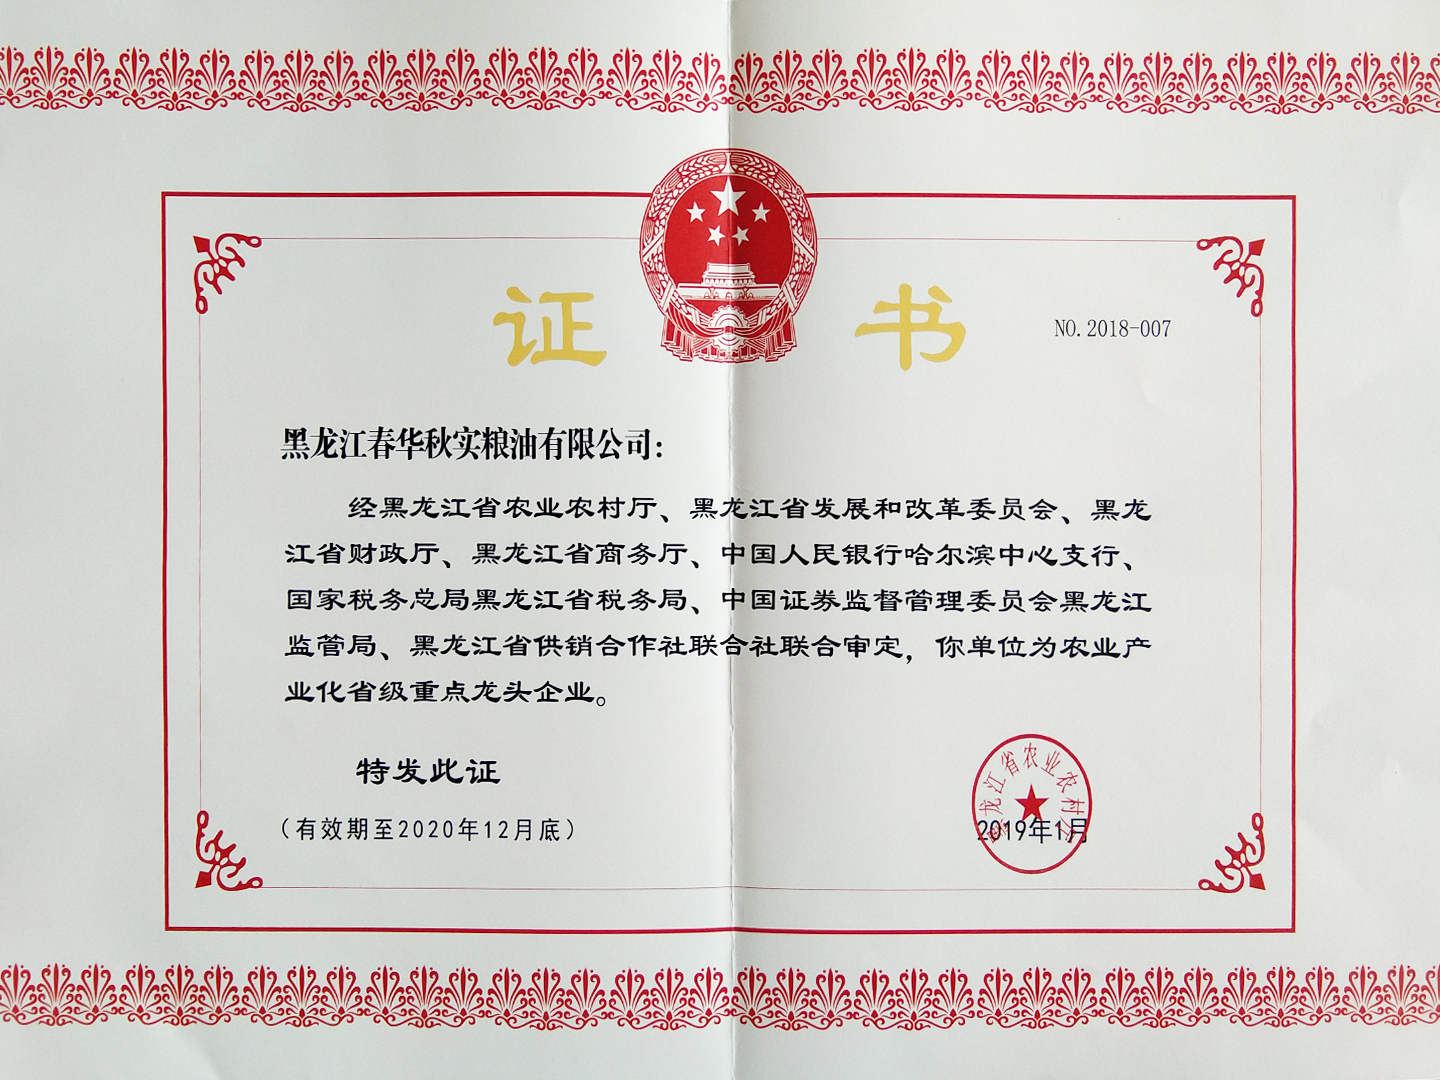 2019年榮獲農業產業化省級重點龍頭企業證書